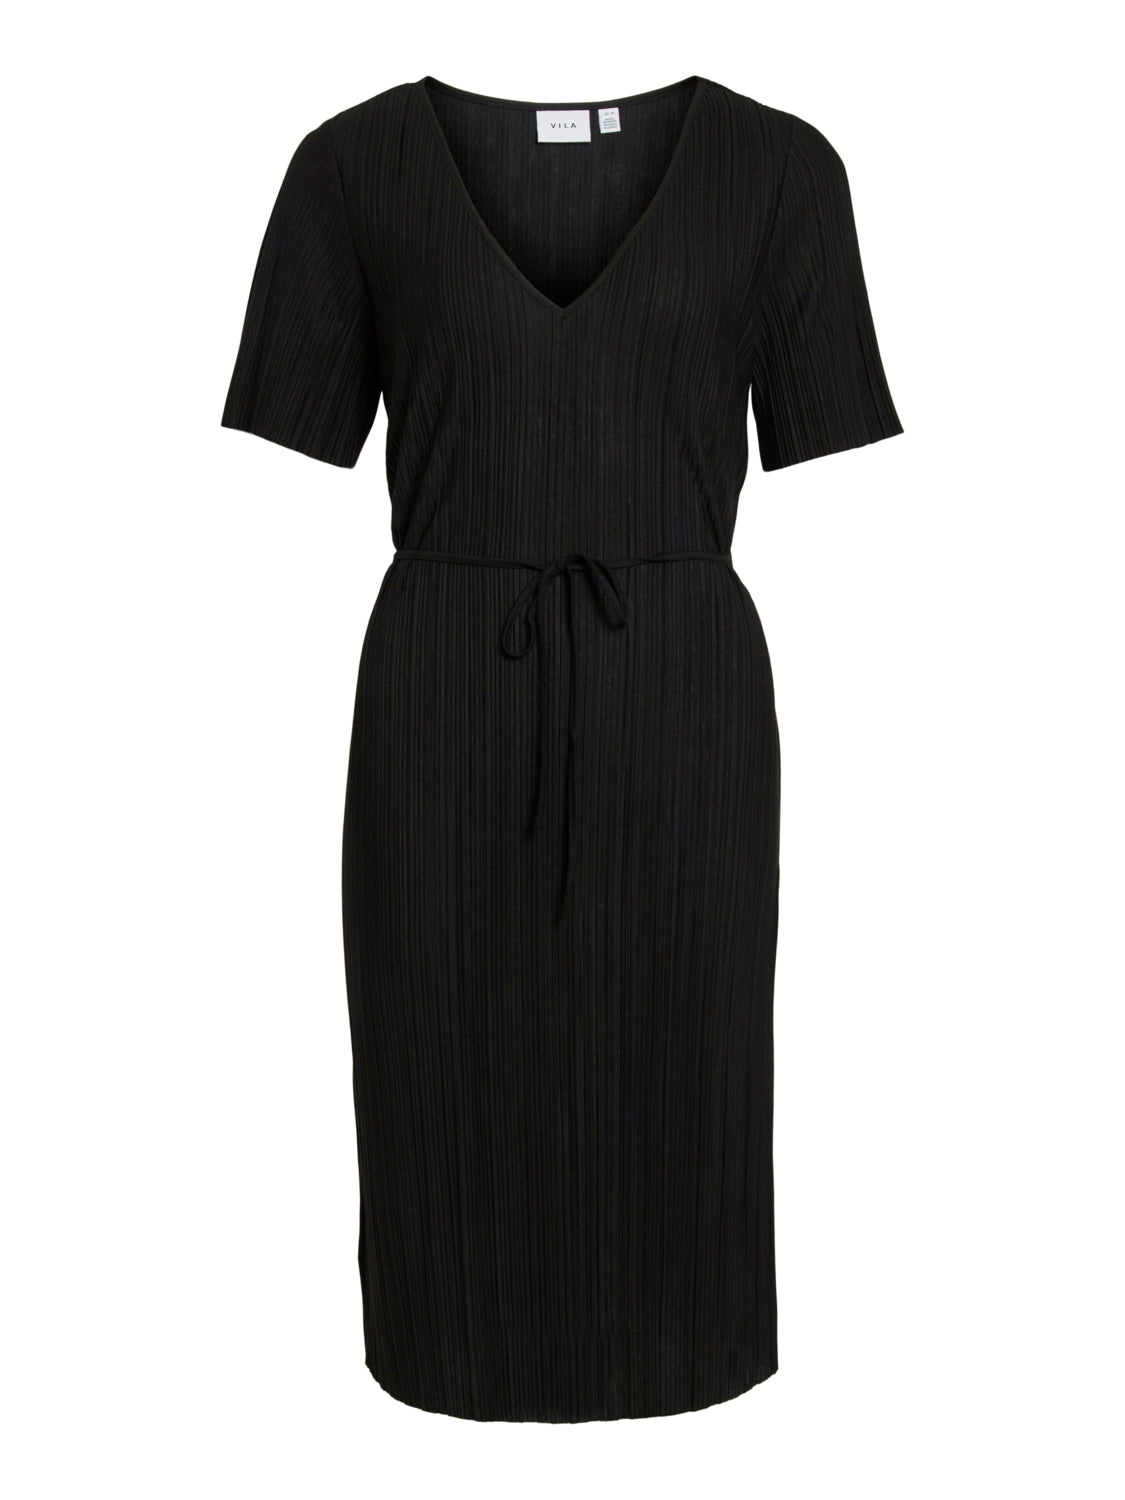 VIPLISA Dress - Black